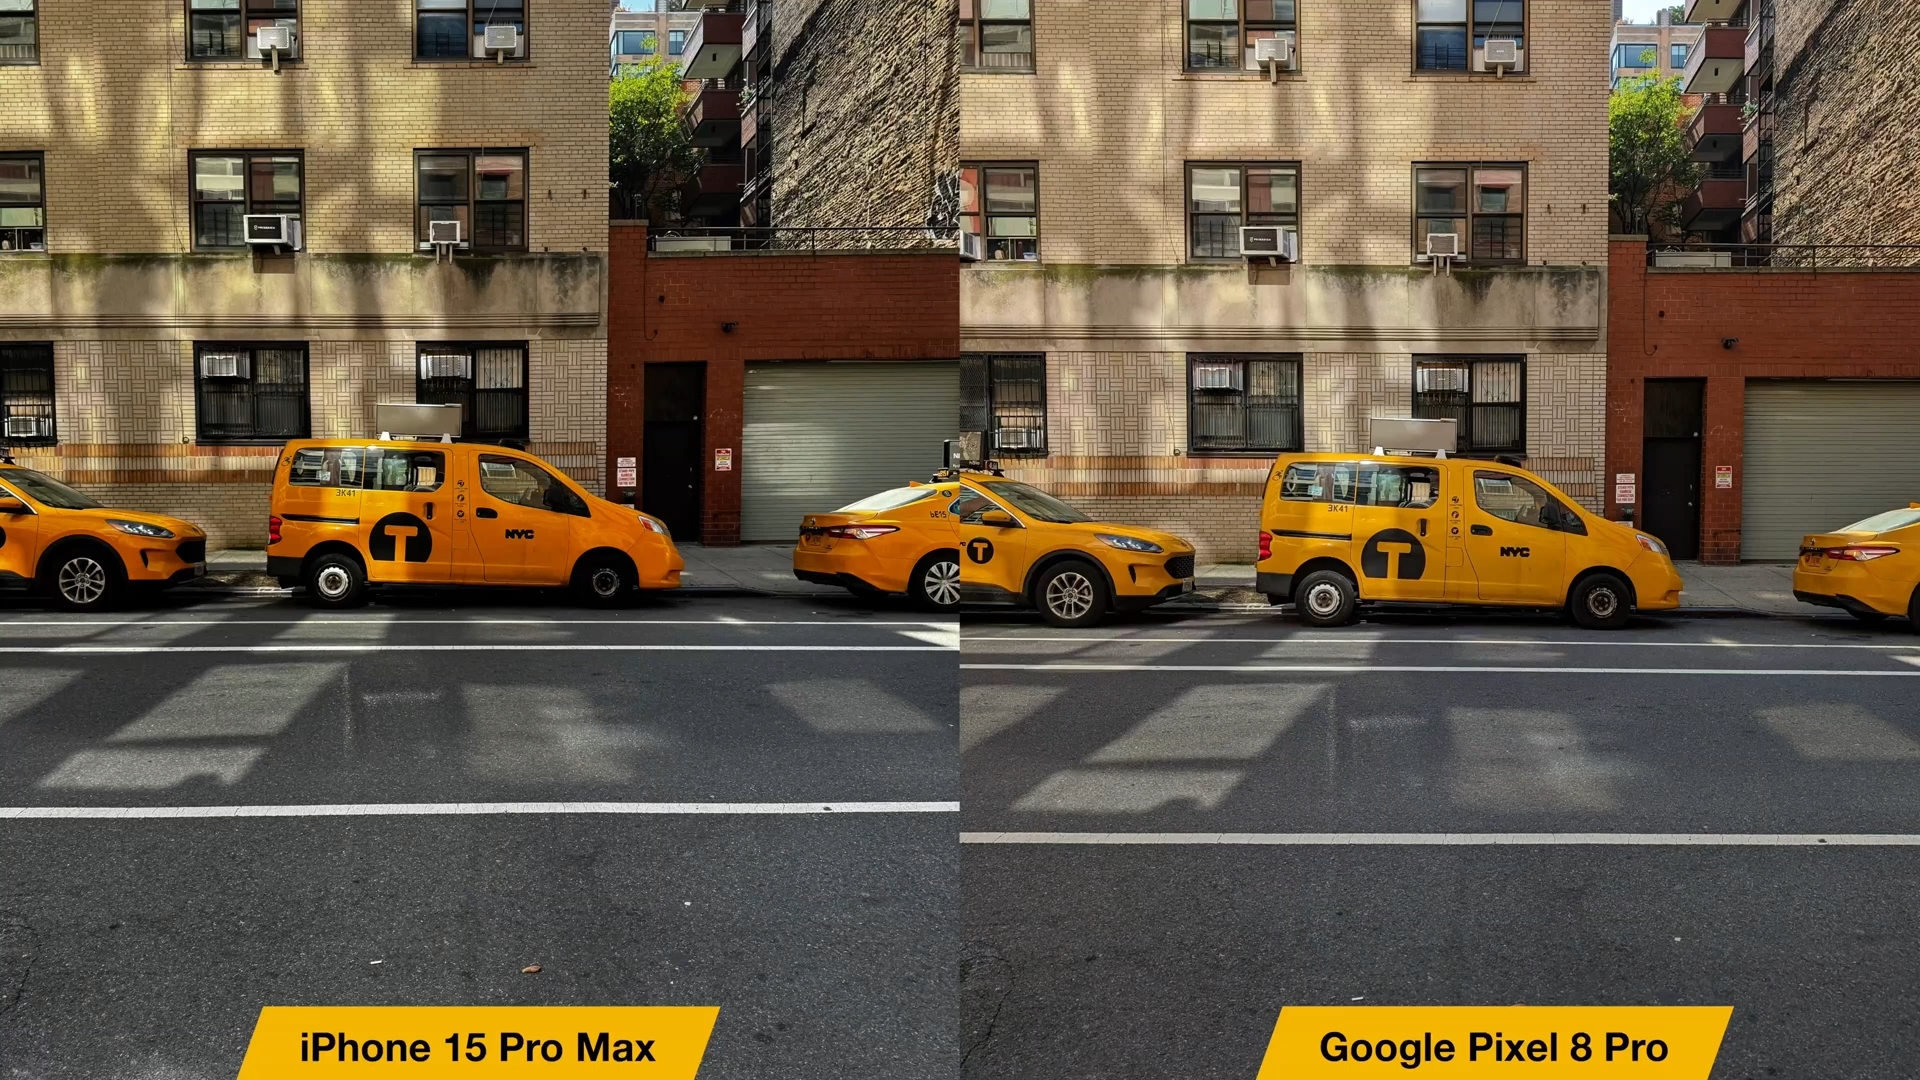 来自 iPhoneIslam.com，Google Pixel 8 Pro 和 iPhone 15 Pro Max 之间的比较